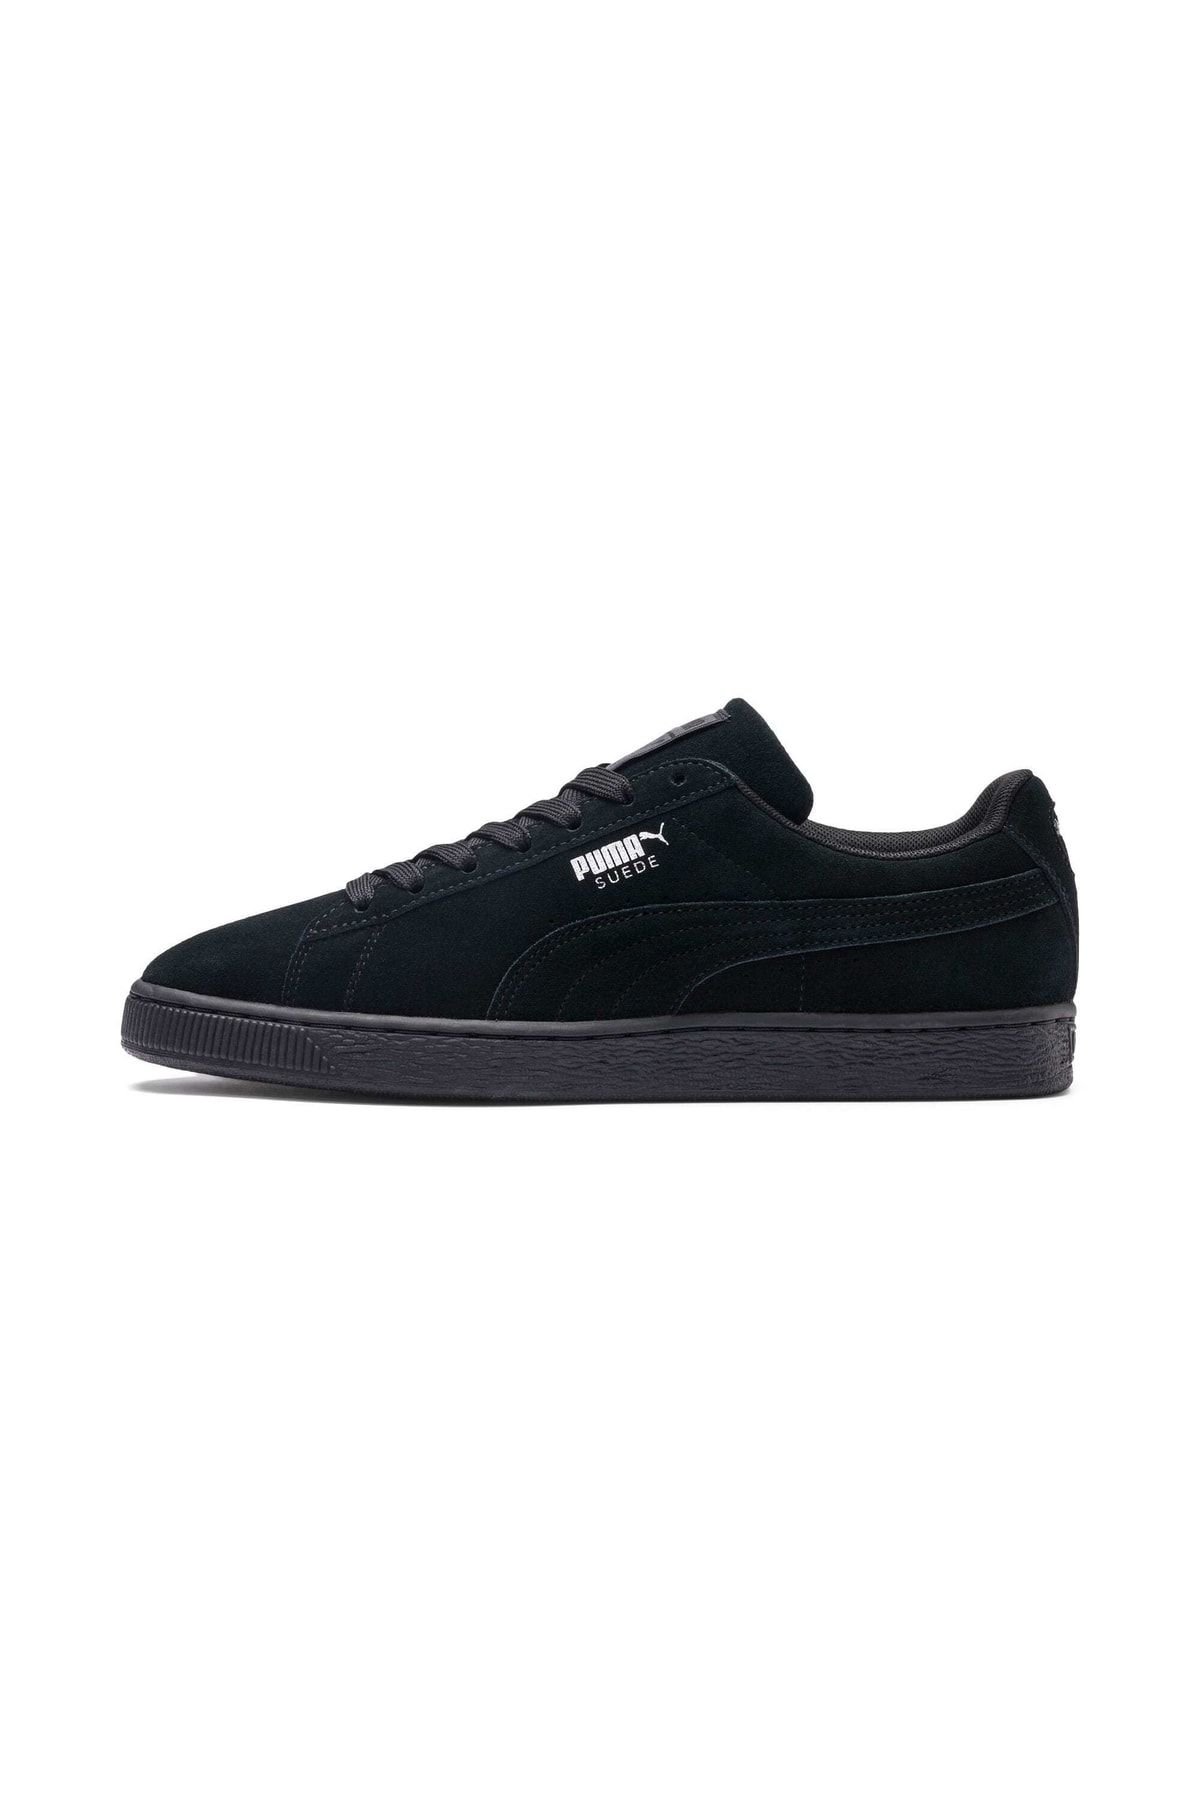 Puma Suede Classic+ Siyah Erkek Sneaker Ayakkabı 100351418